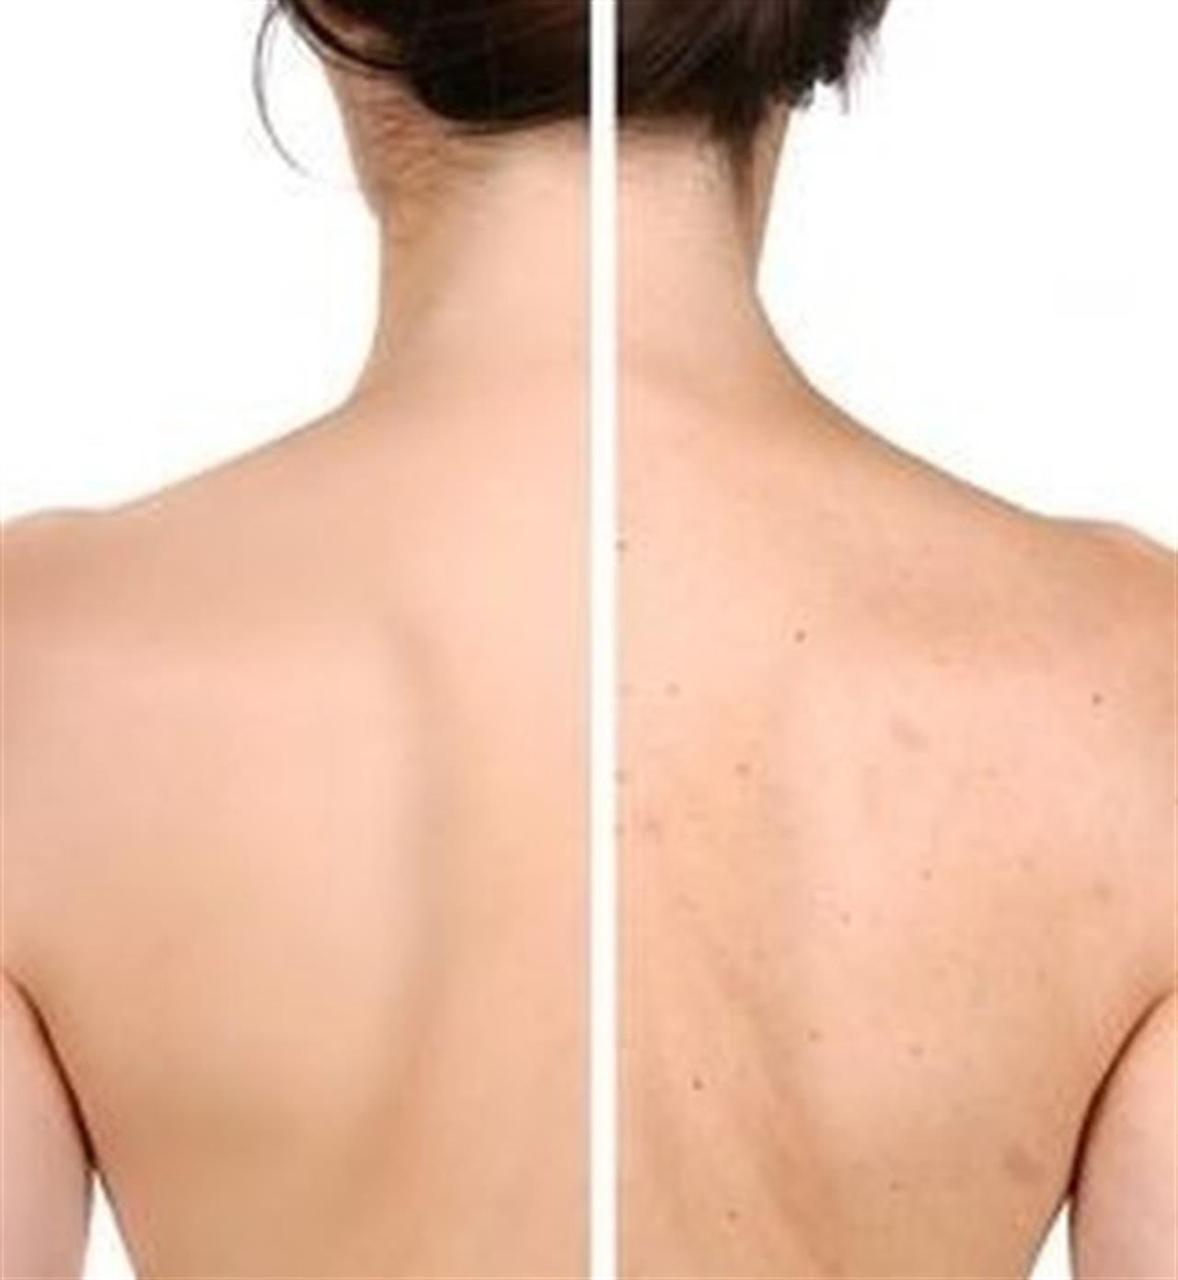 причины прыщей на спине груди у женщин фото 24